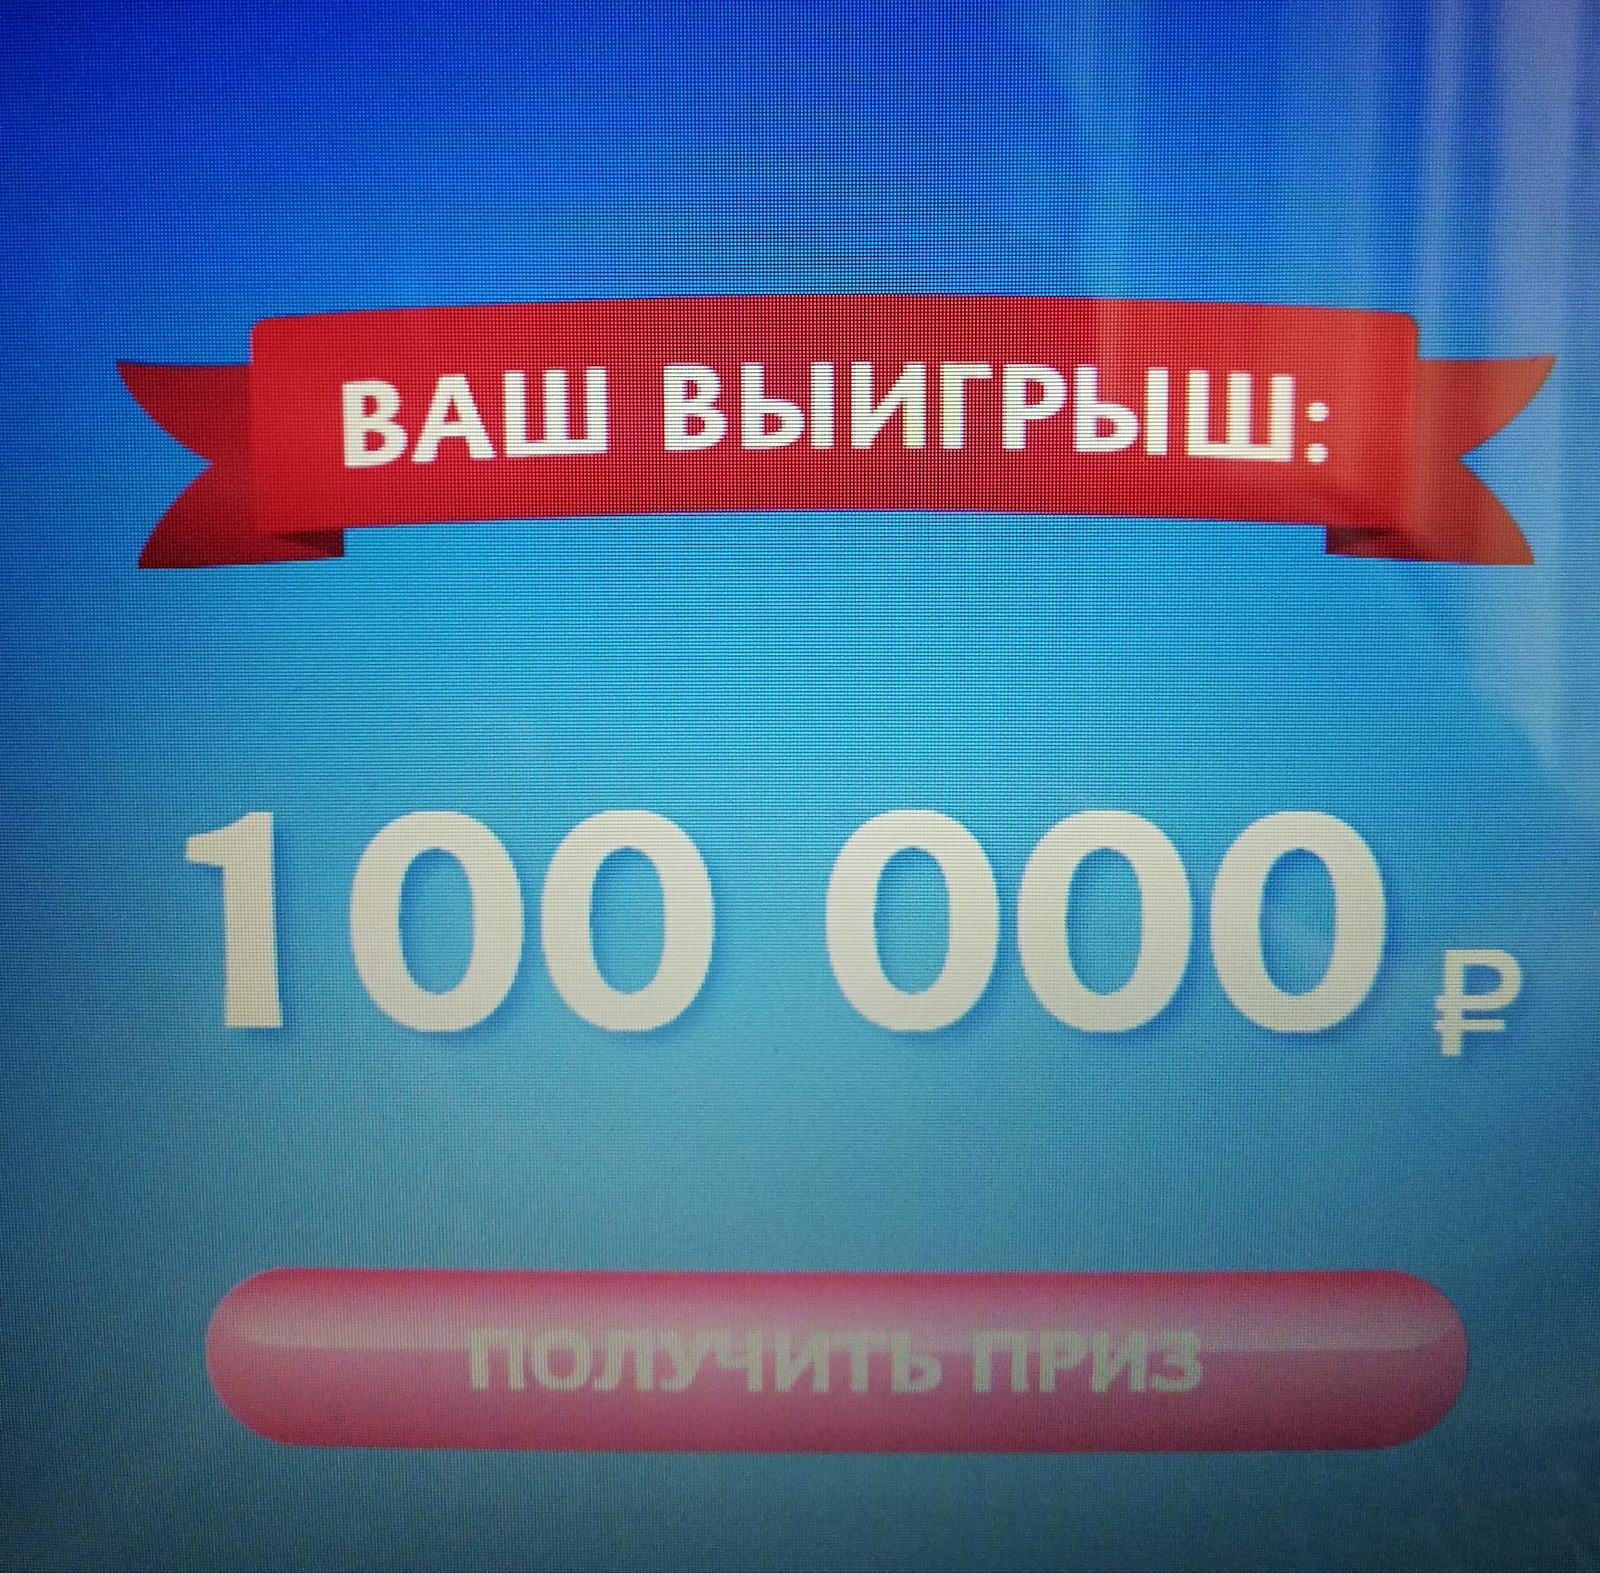 Приз миллион рублей. Вы выиграли 100 рублей. Приз 100000 рублей. Приз 100 рублей. Вы выйграли милион рублей.